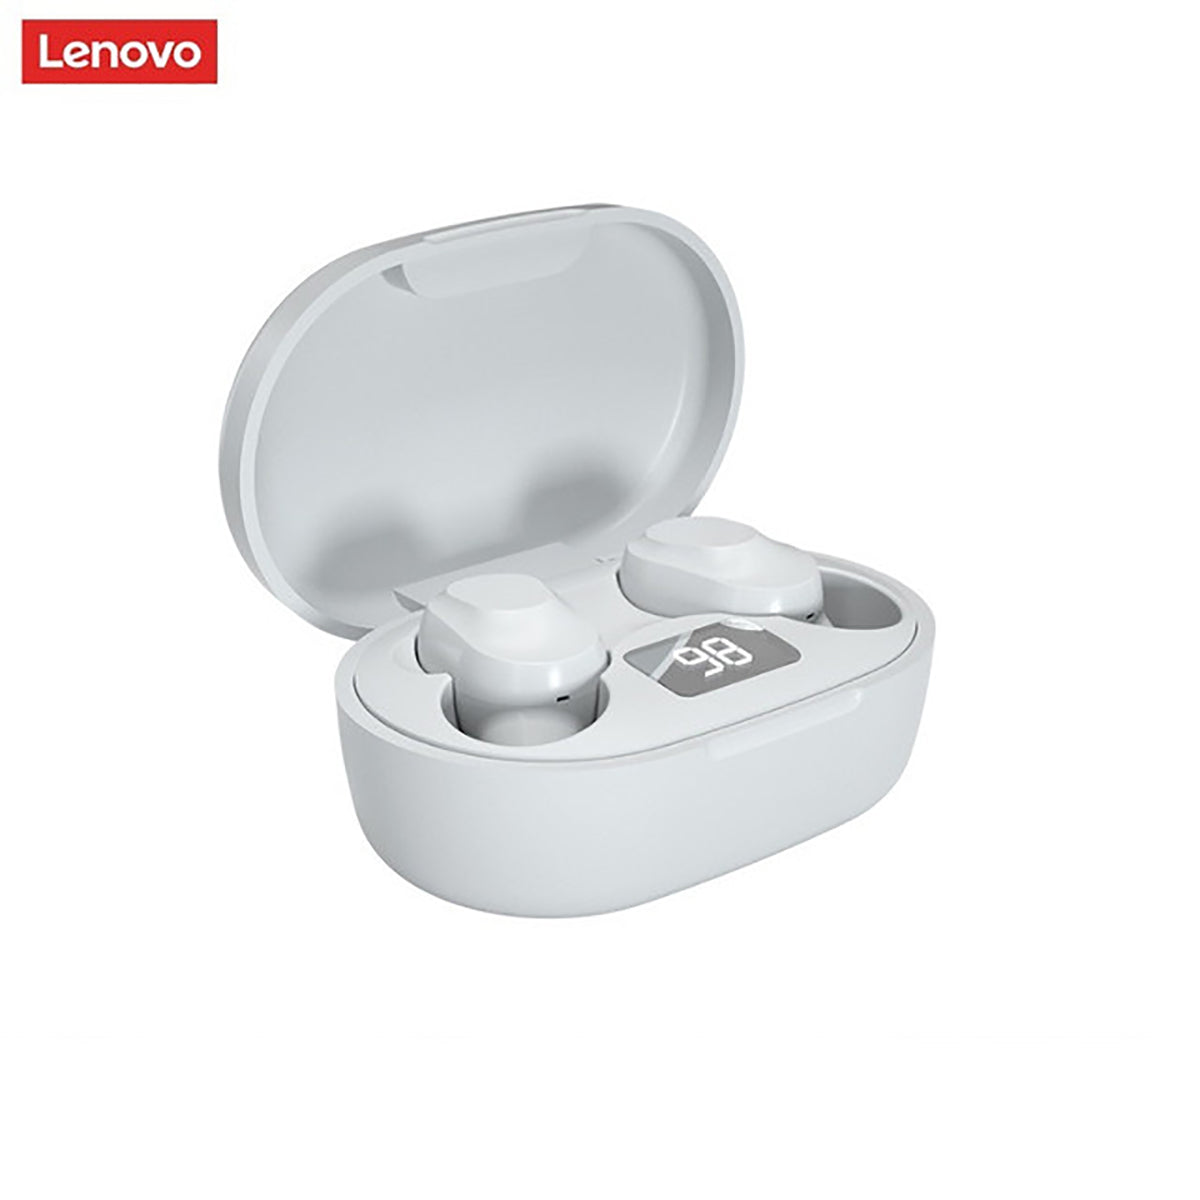 Lenovo XT91 Bluetooth-Kopfhörer Weiß